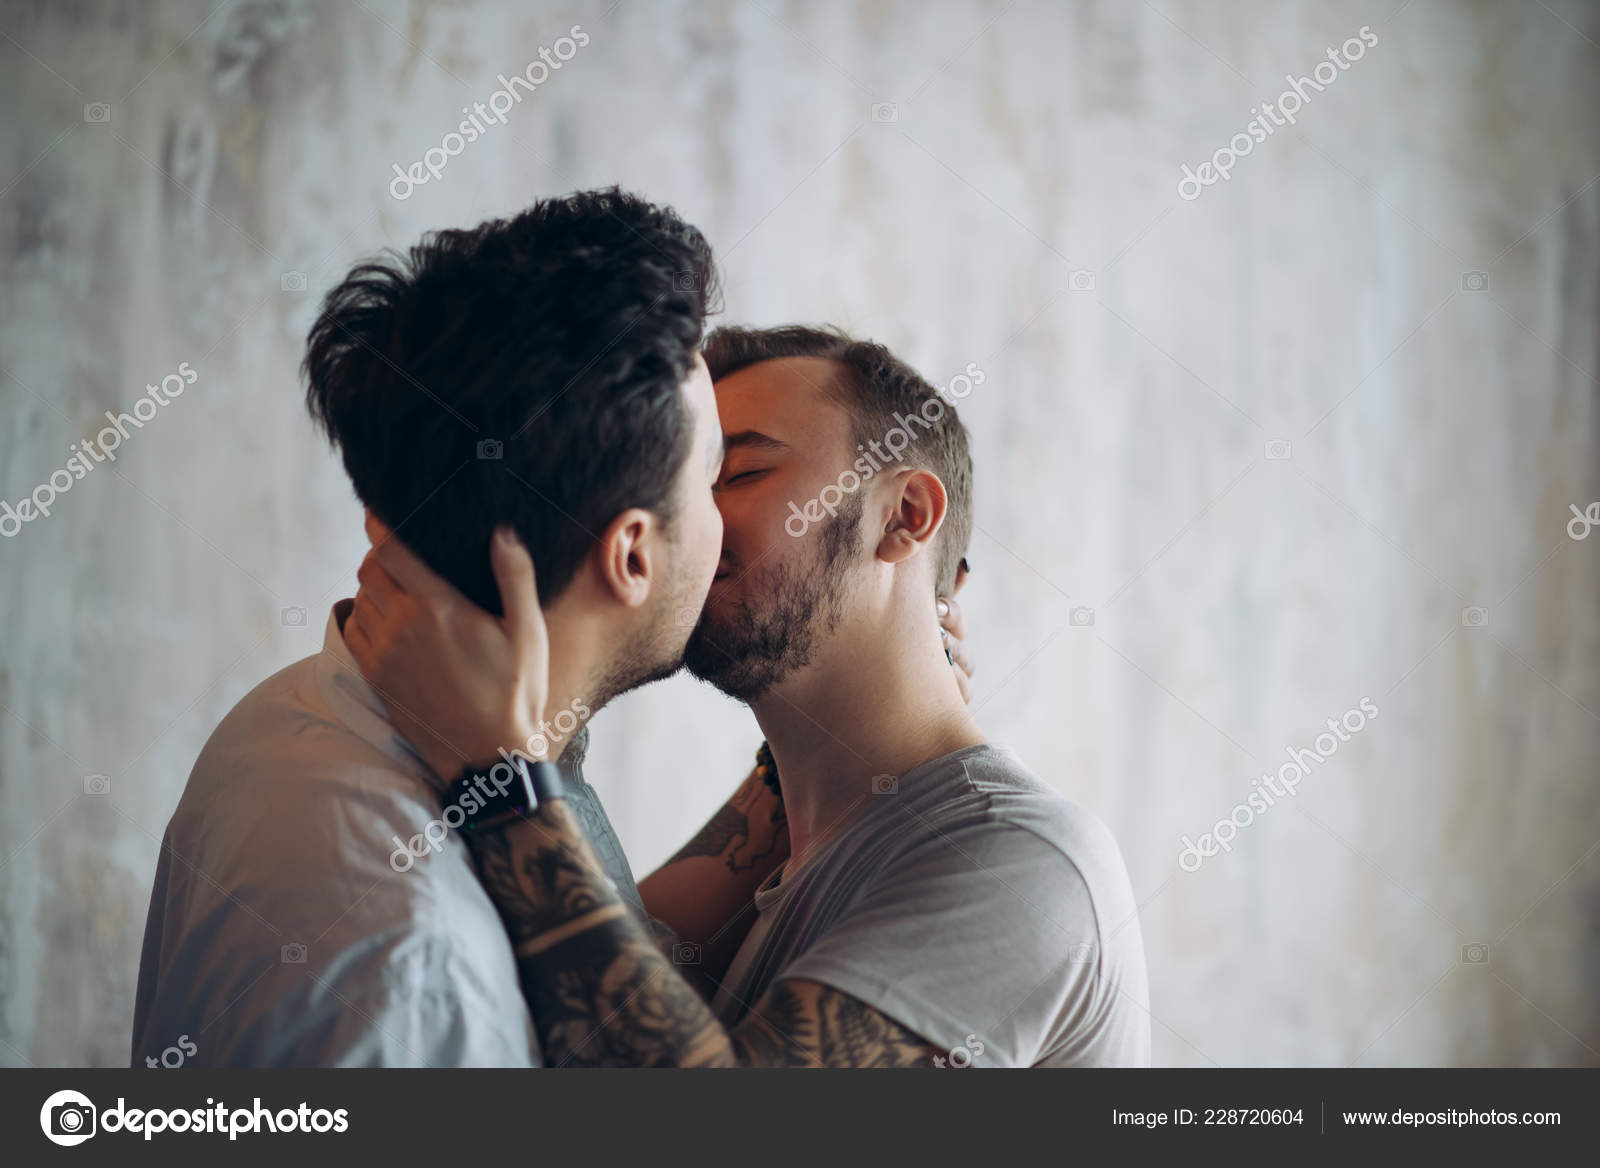 Hot guys kissing